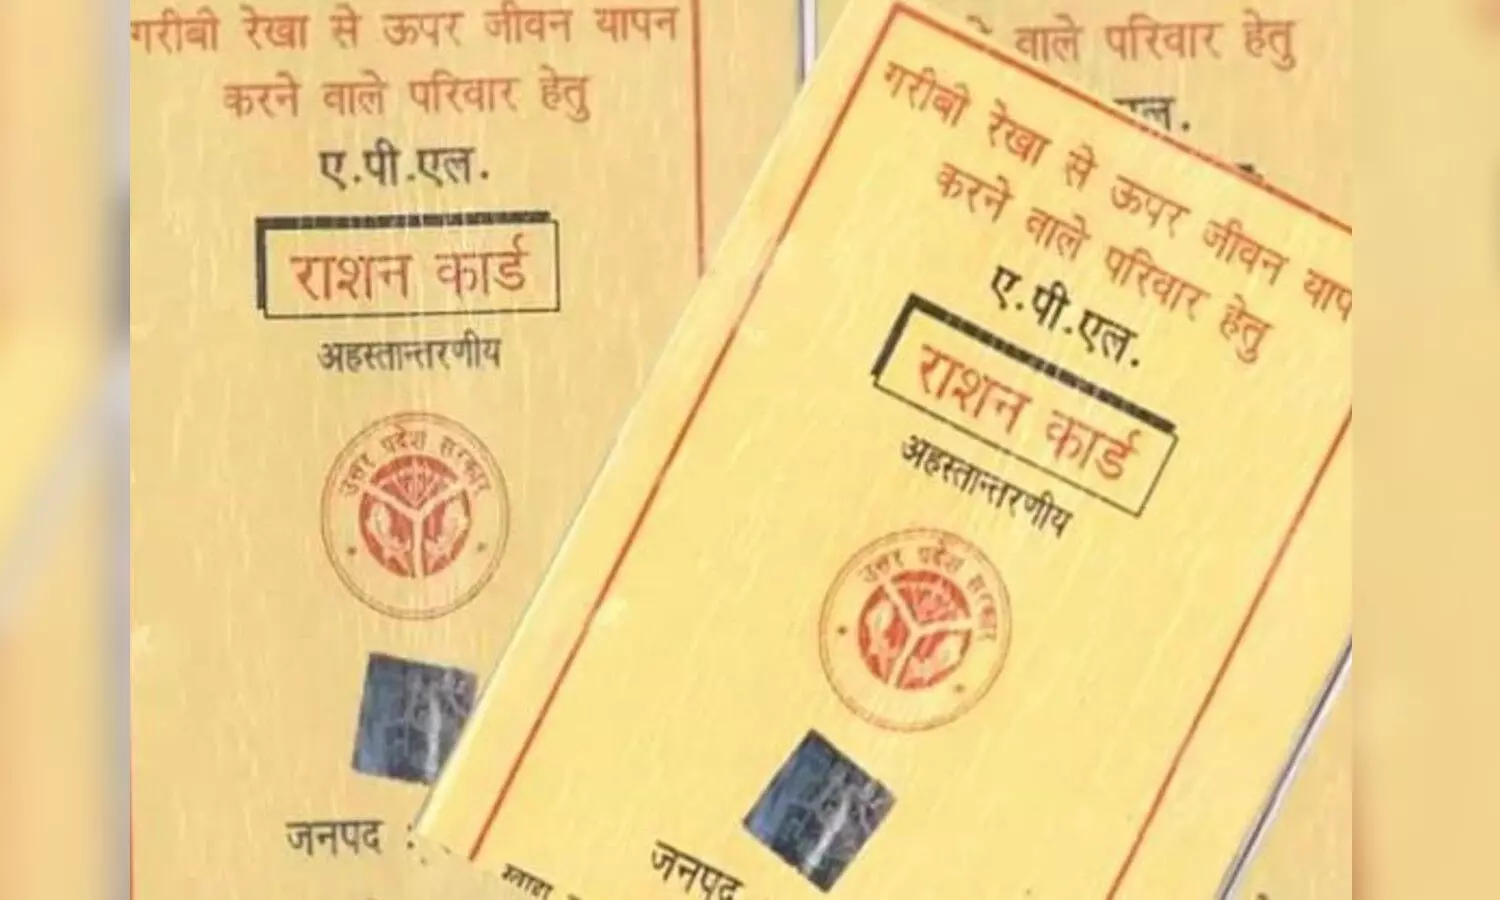 Sonbhadra News: राशन कार्ड निरस्त करने का हुआ फैसला, जानें कहीं आपका नाम भी तो नहीं शामिल